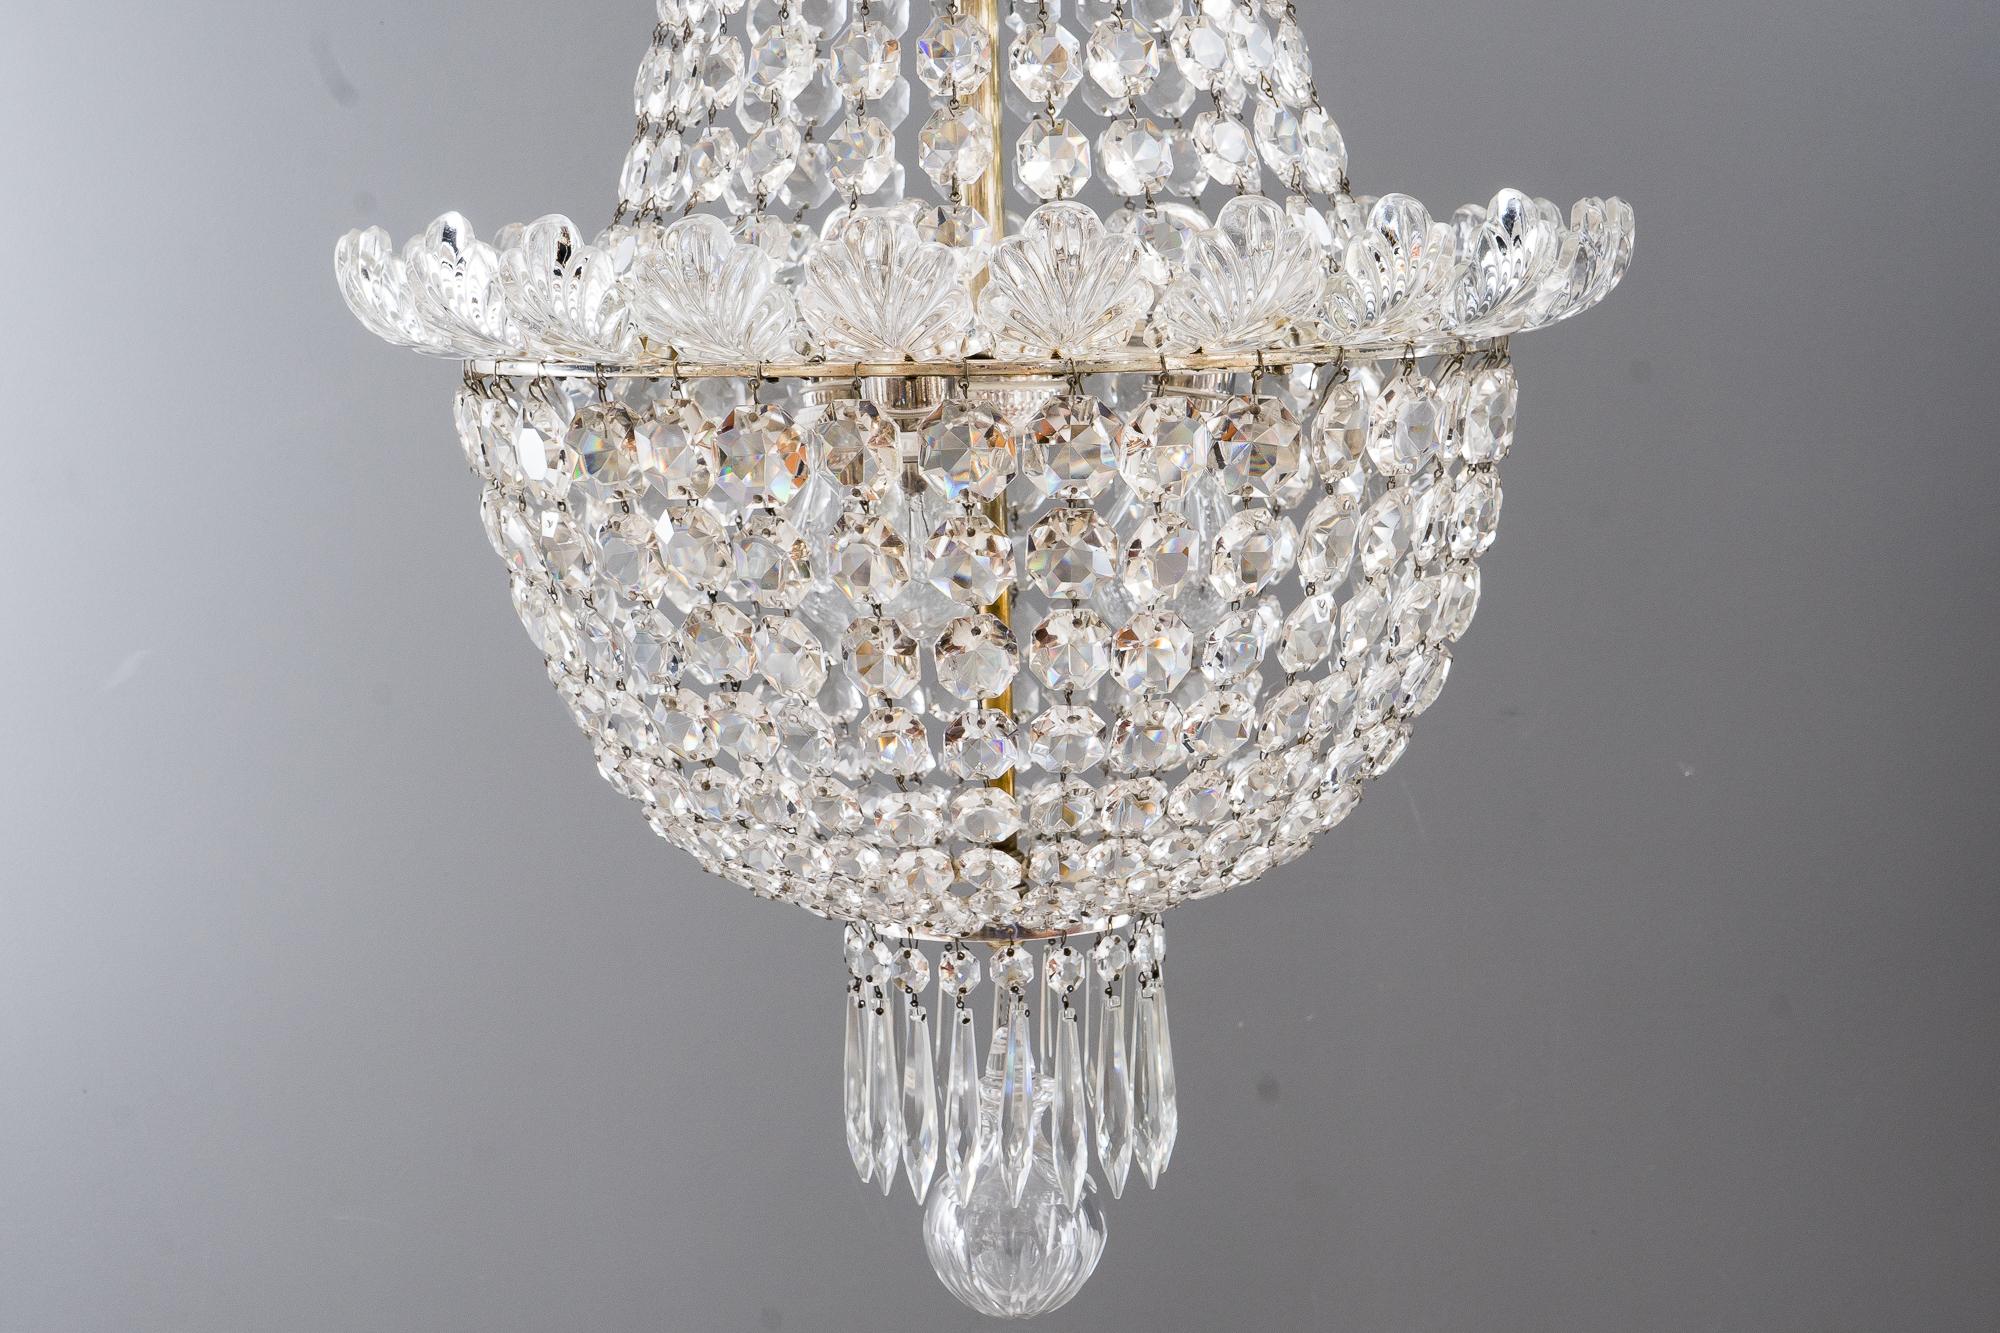 Antique crystal basket chandelier, Vienna, circa 1890s
Brass silvered
Good original condition.